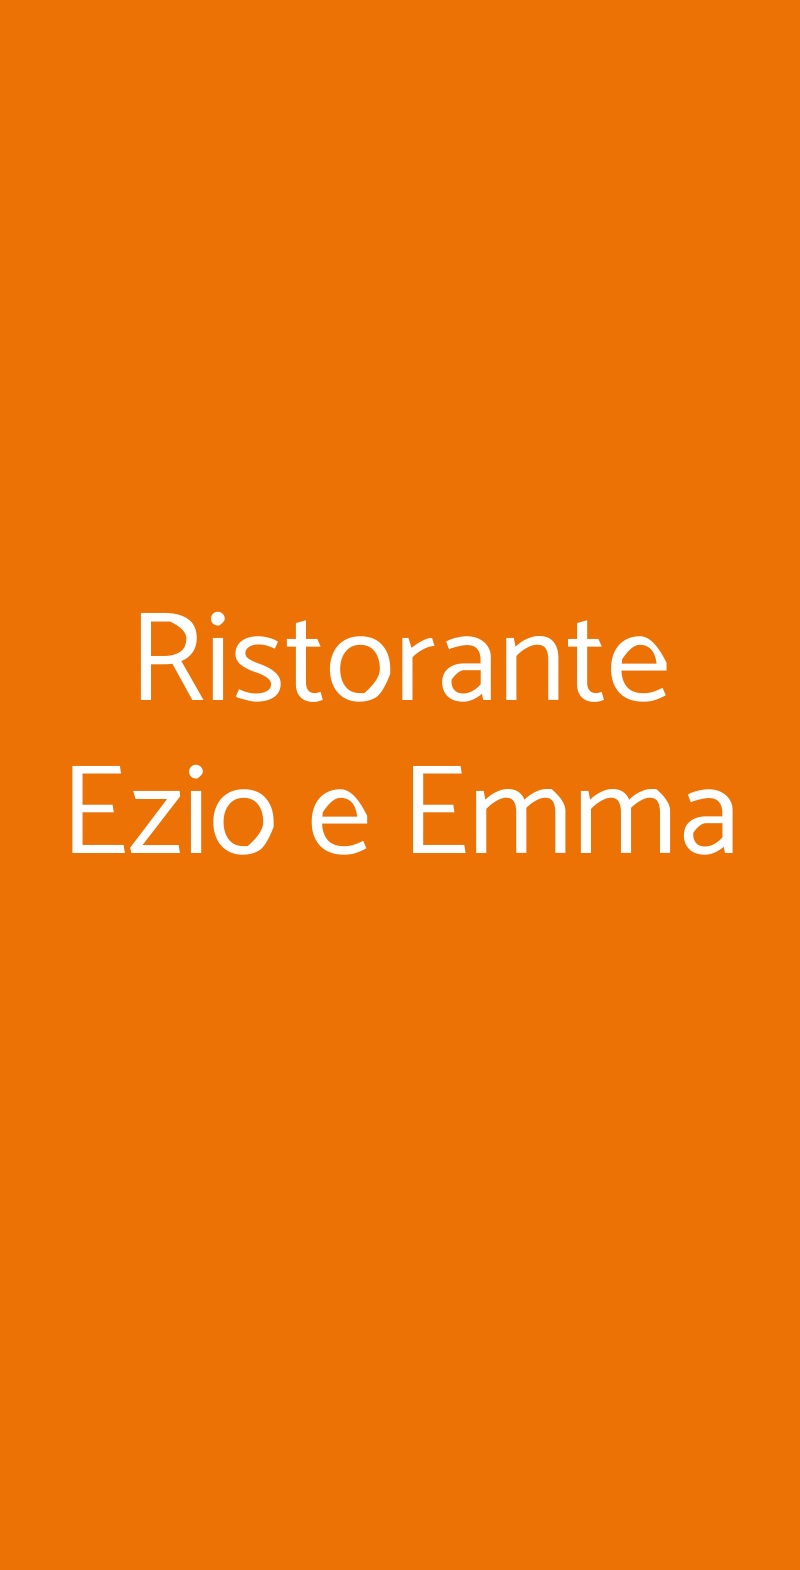 Ristorante Ezio e Emma Ronco Scrivia menù 1 pagina